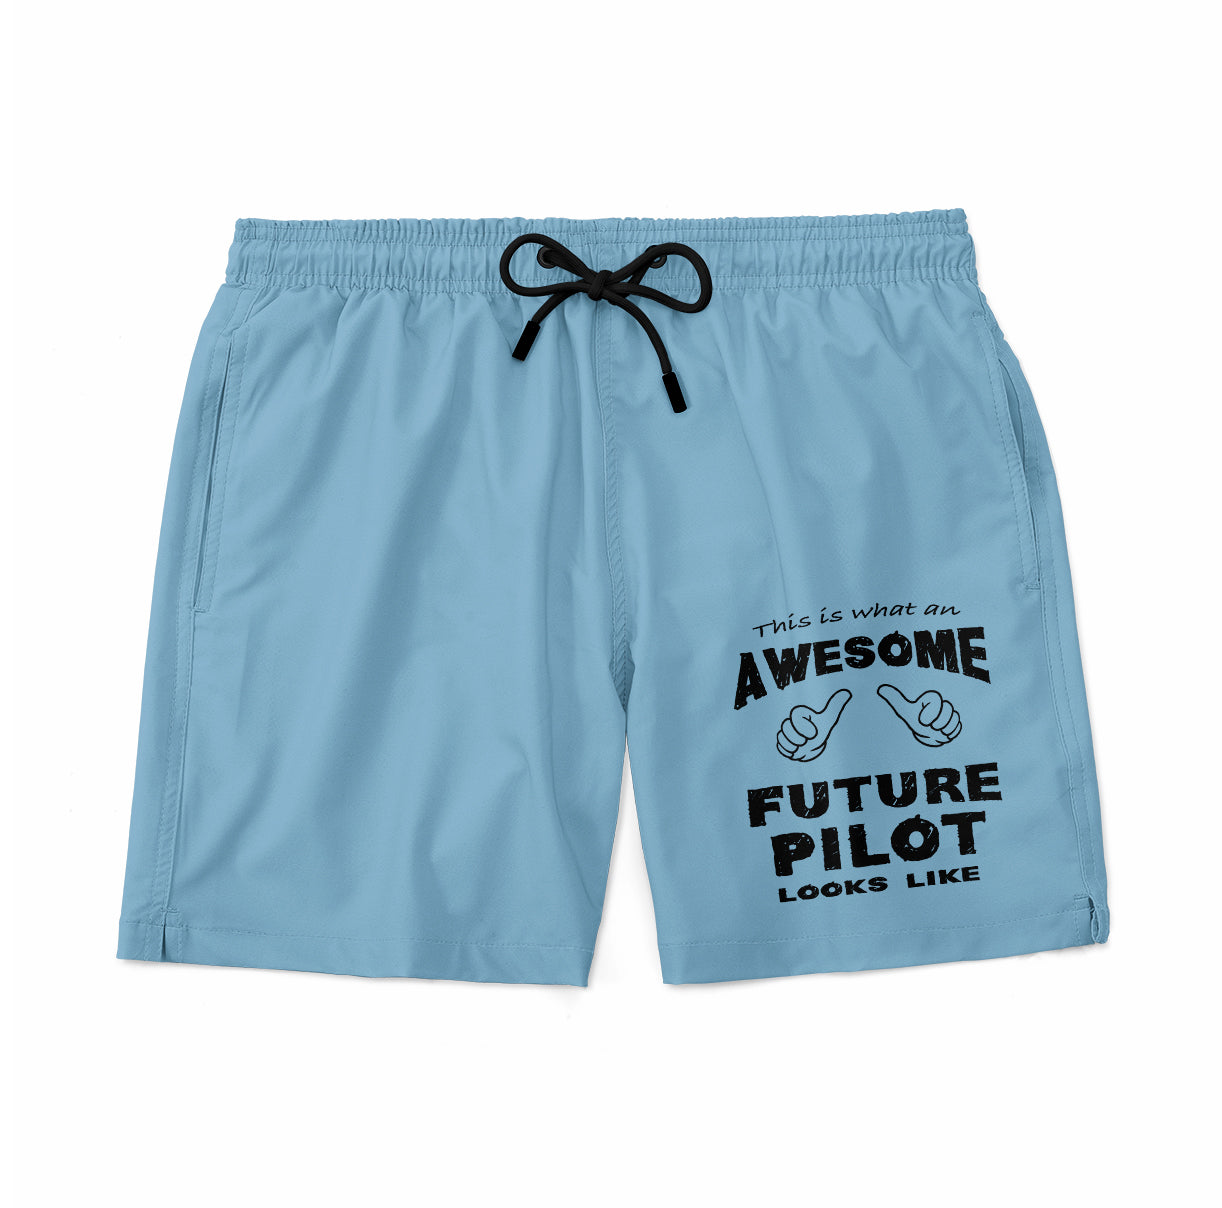 Future Pilot Designed Swim Trunks & Shorts